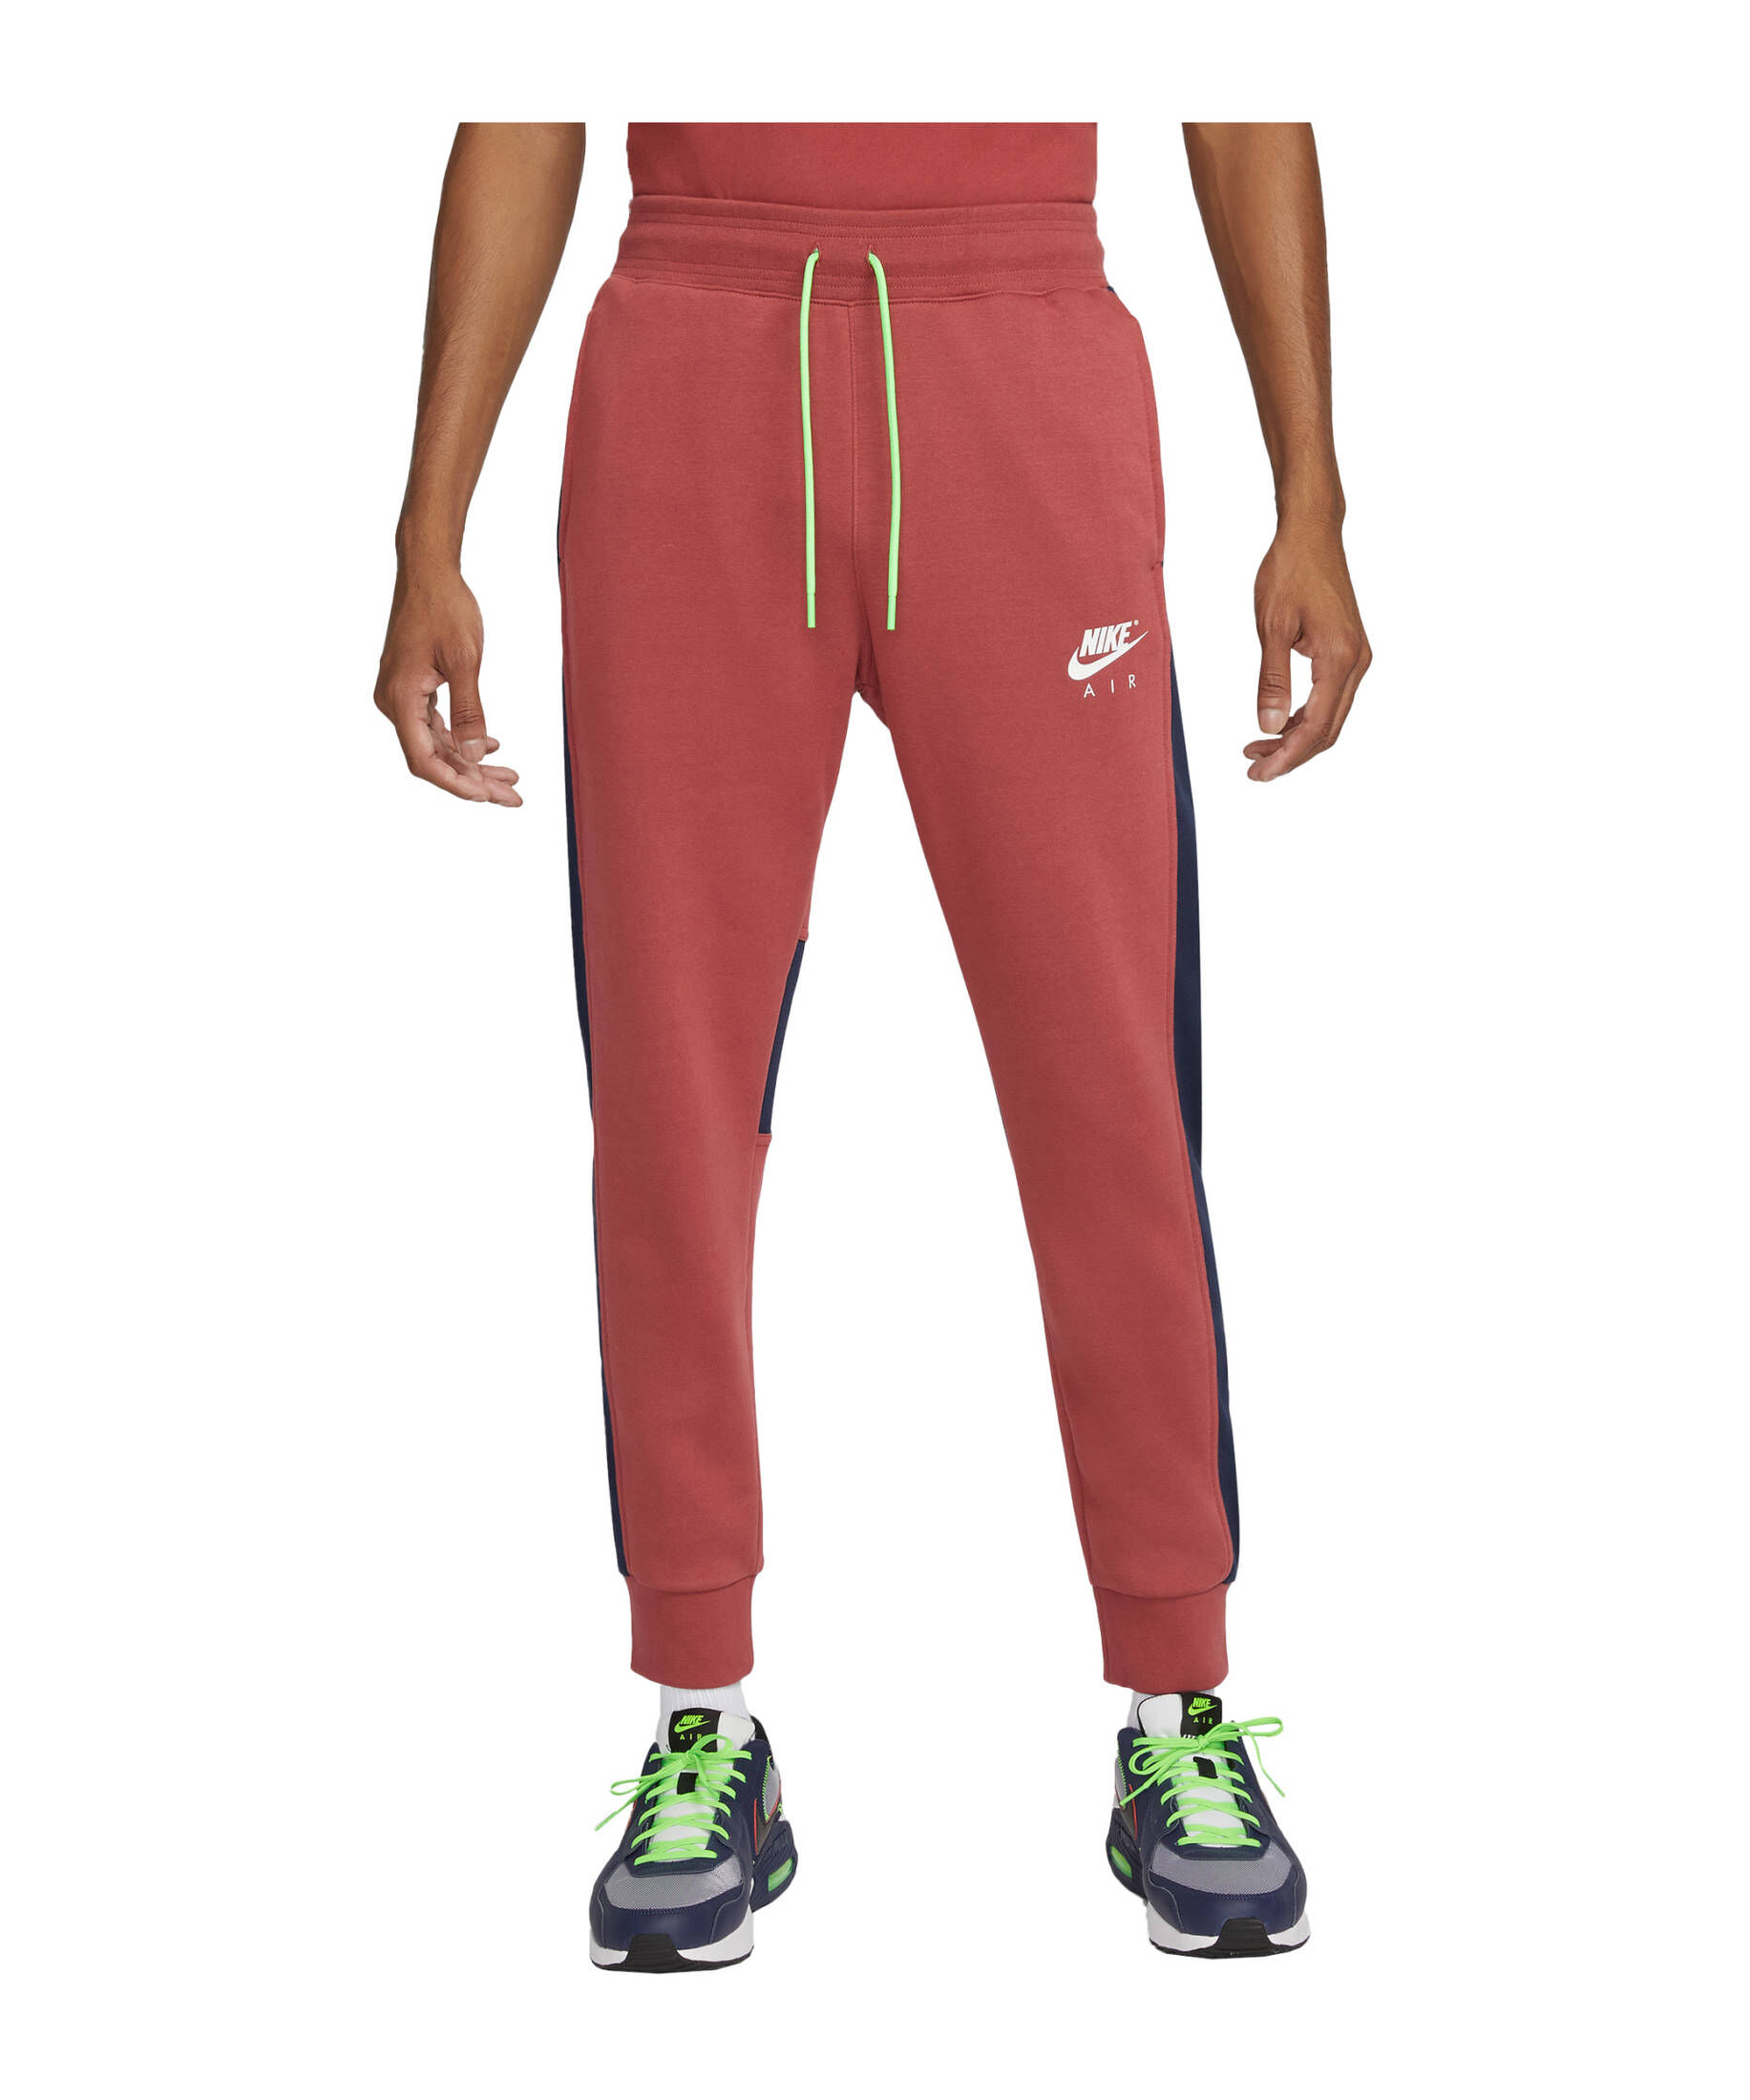 Nike Herren Lifestyle - Textilien - Hosen lang Air Brushed-Back Fleece Jogginghose kaufen |